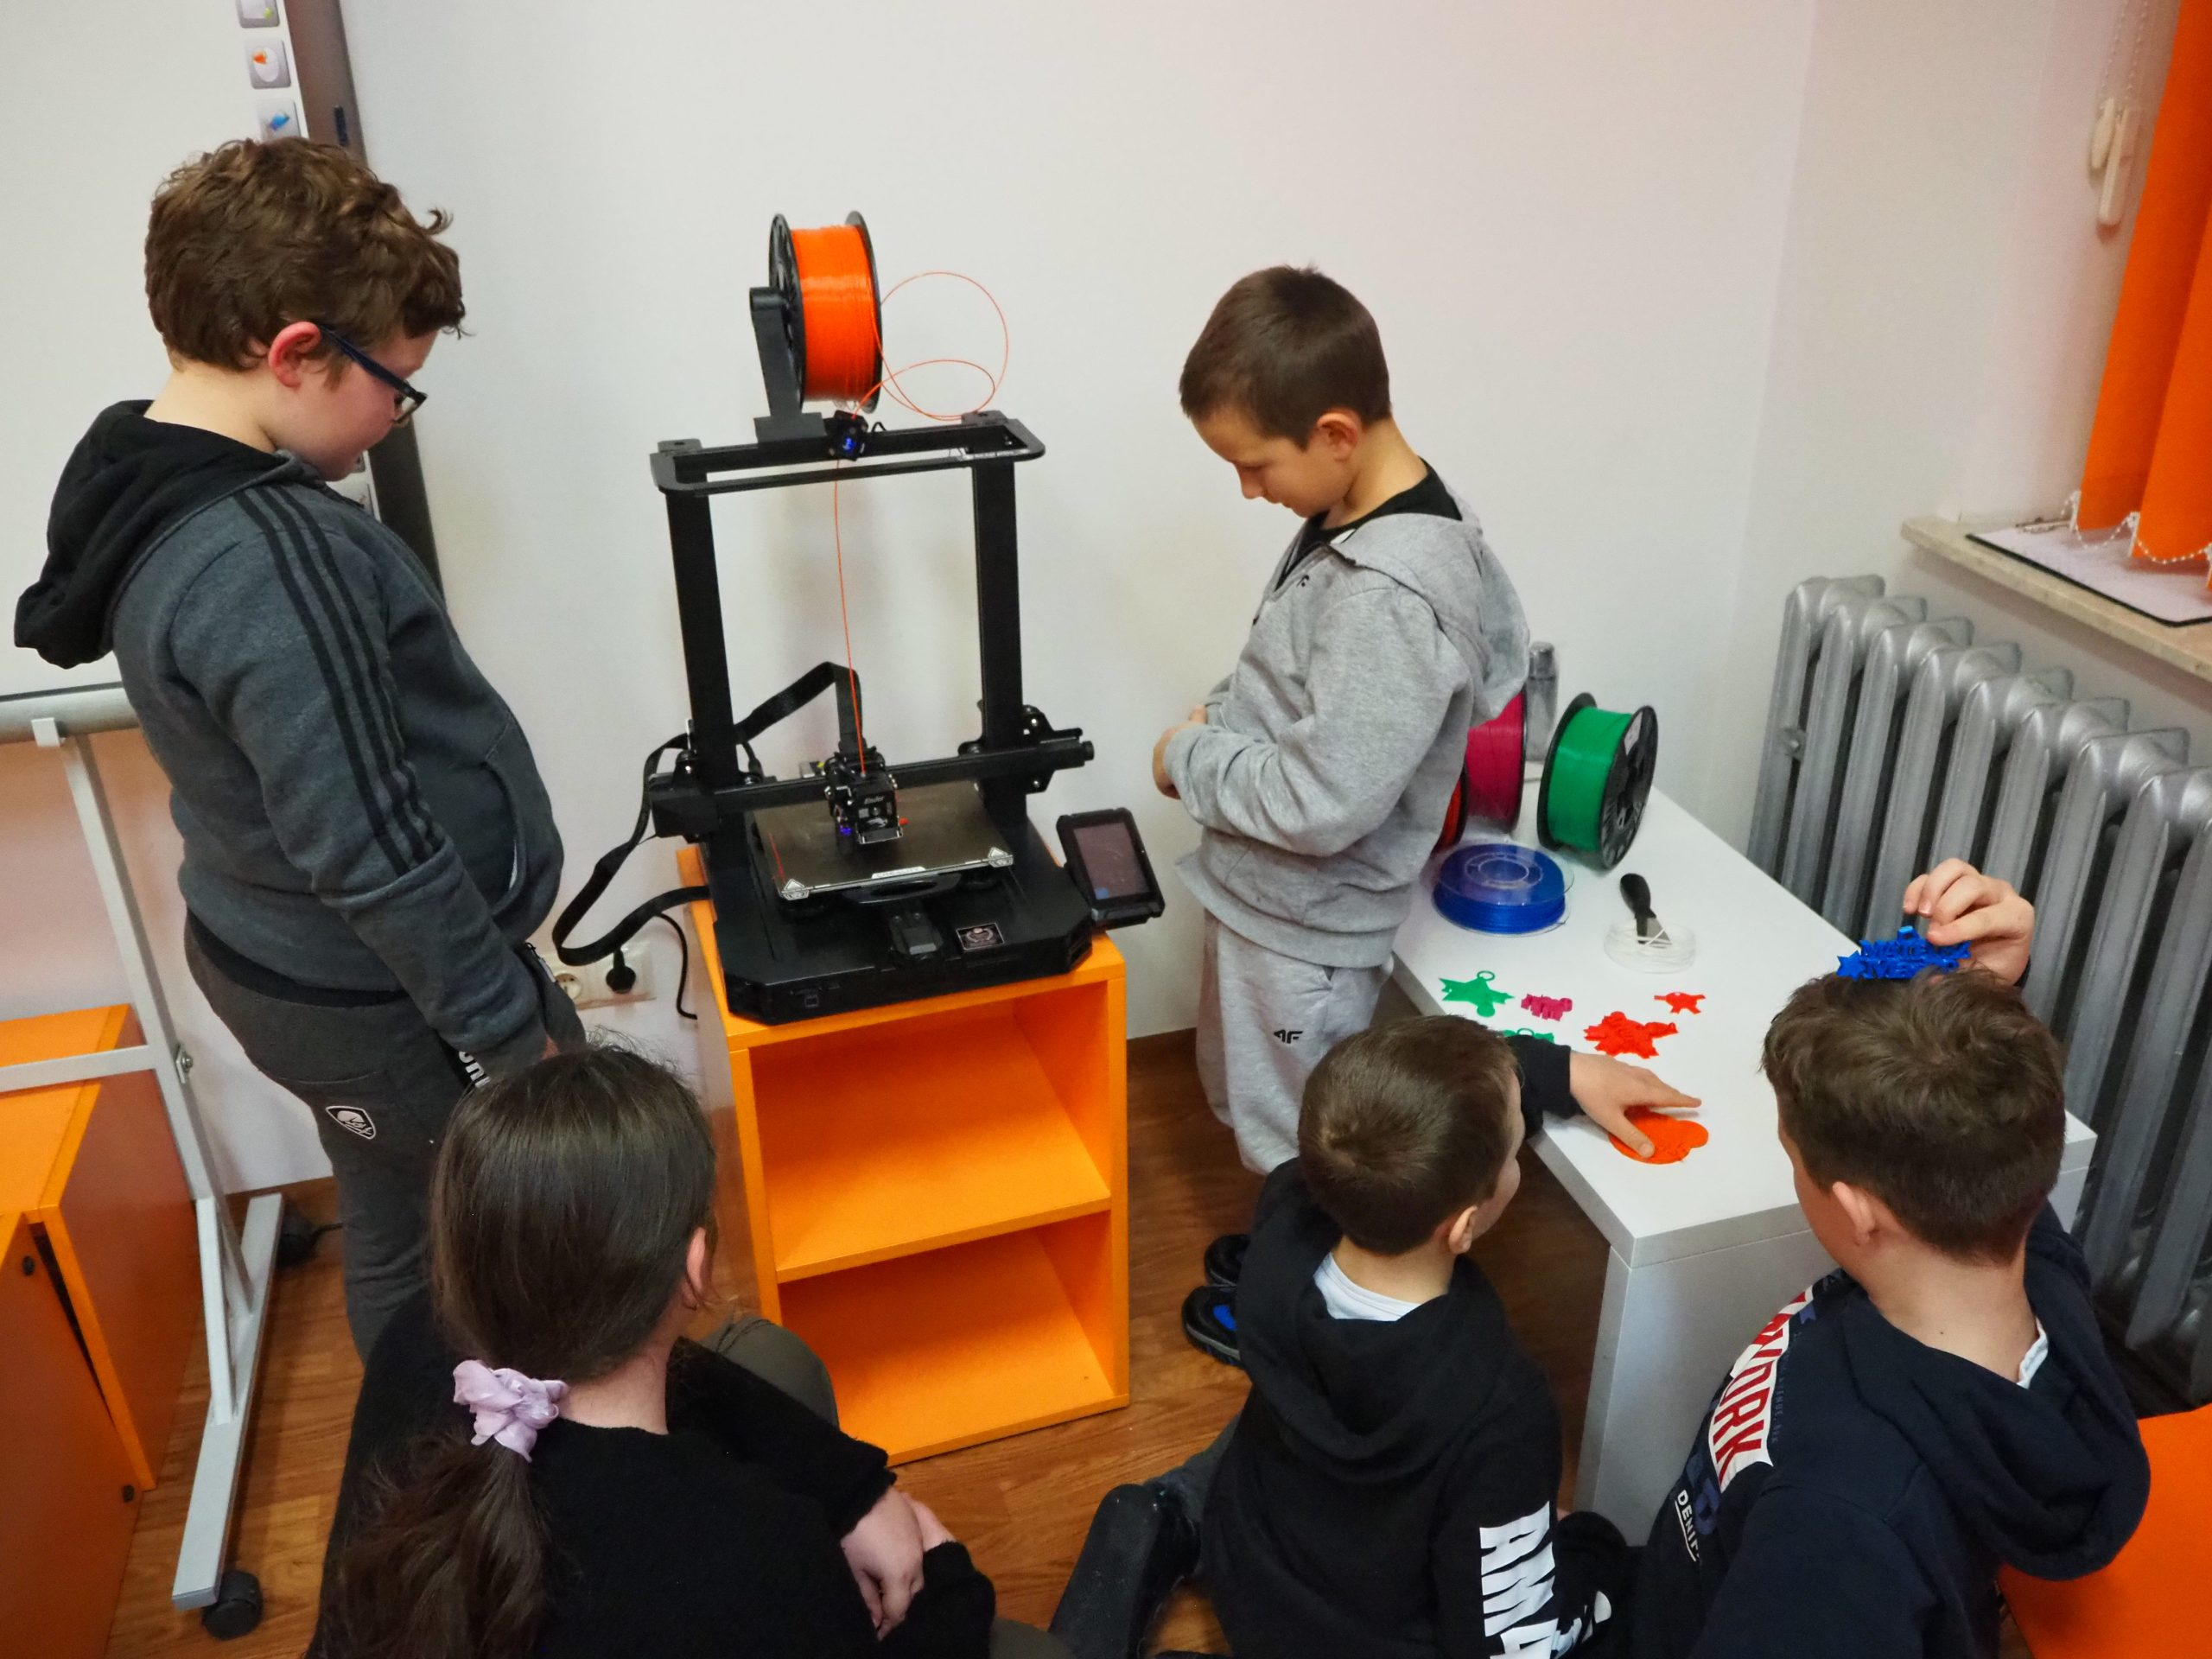 Grupa dzieci obserwuje proces drukowania na drukarce 3D.